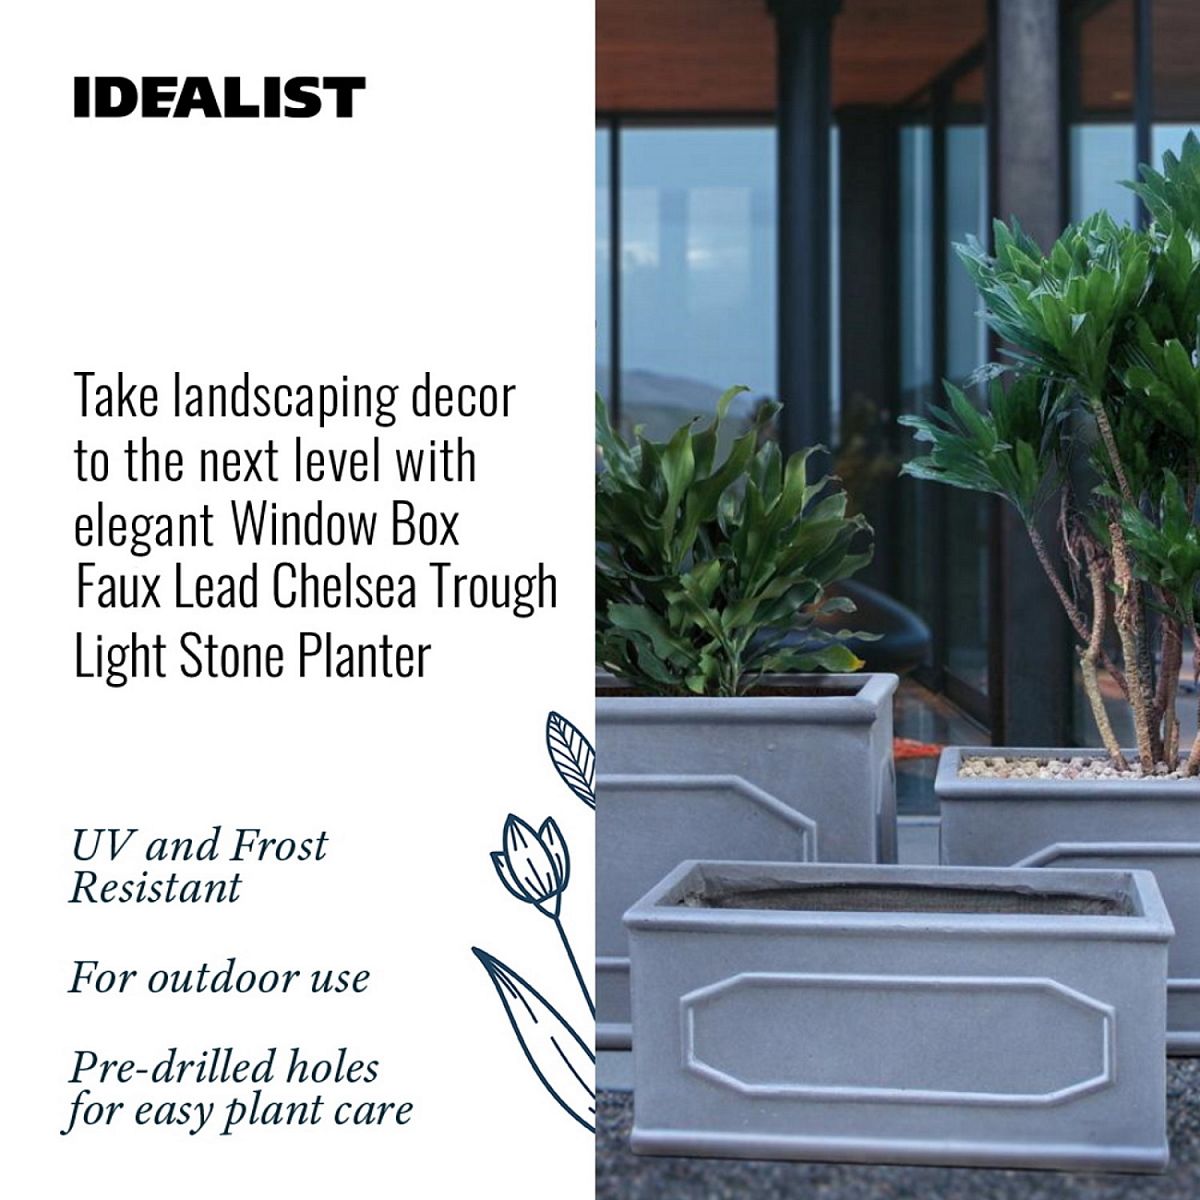 IDEALIST Lite Faux Lead Chelsea Grey Light Stone Through Planter Set